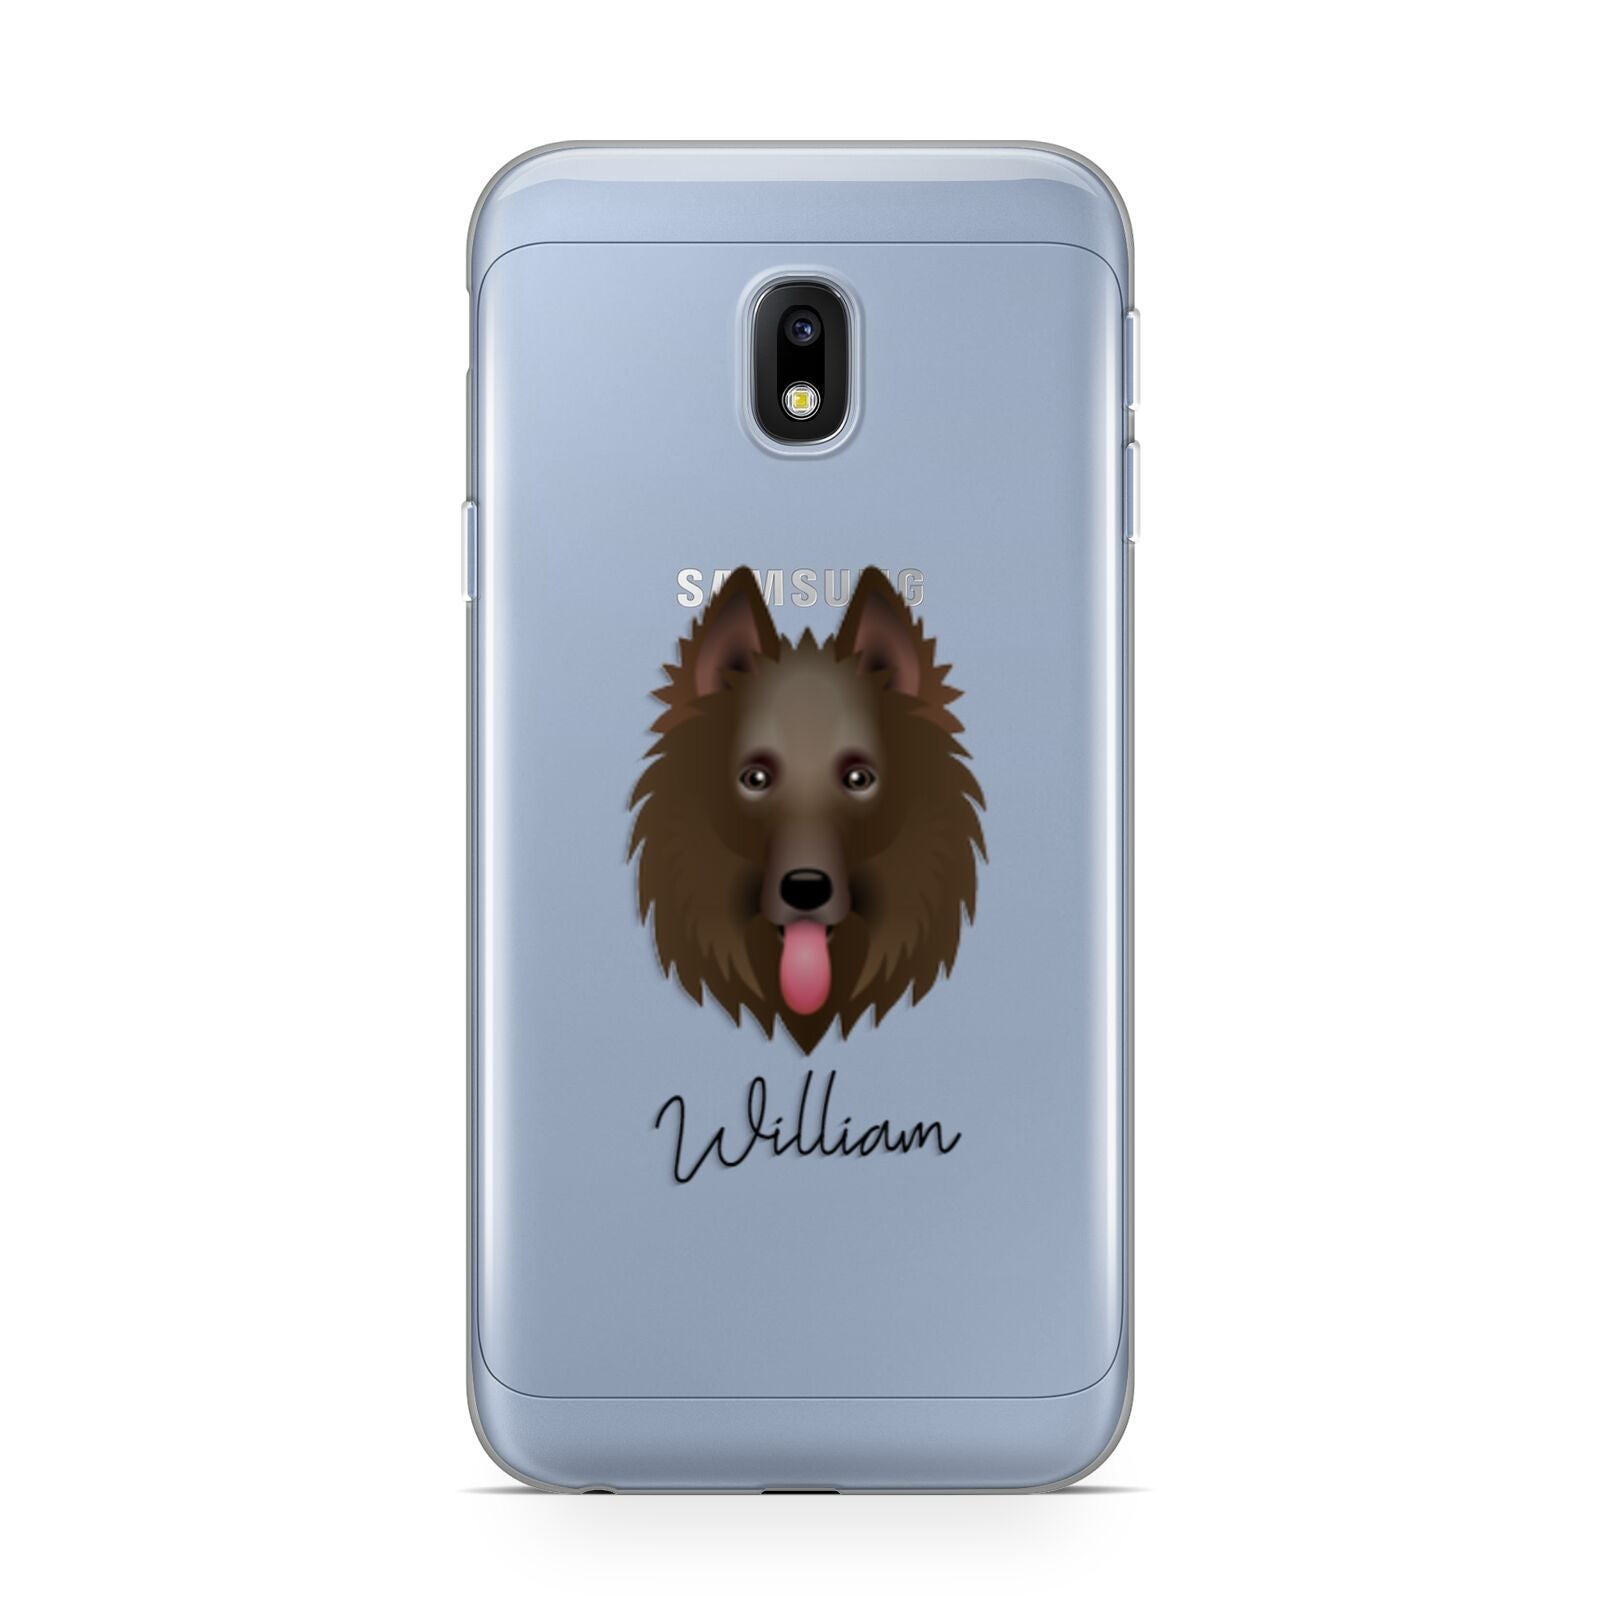 Belgian Shepherd Personalised Samsung Galaxy J3 2017 Case